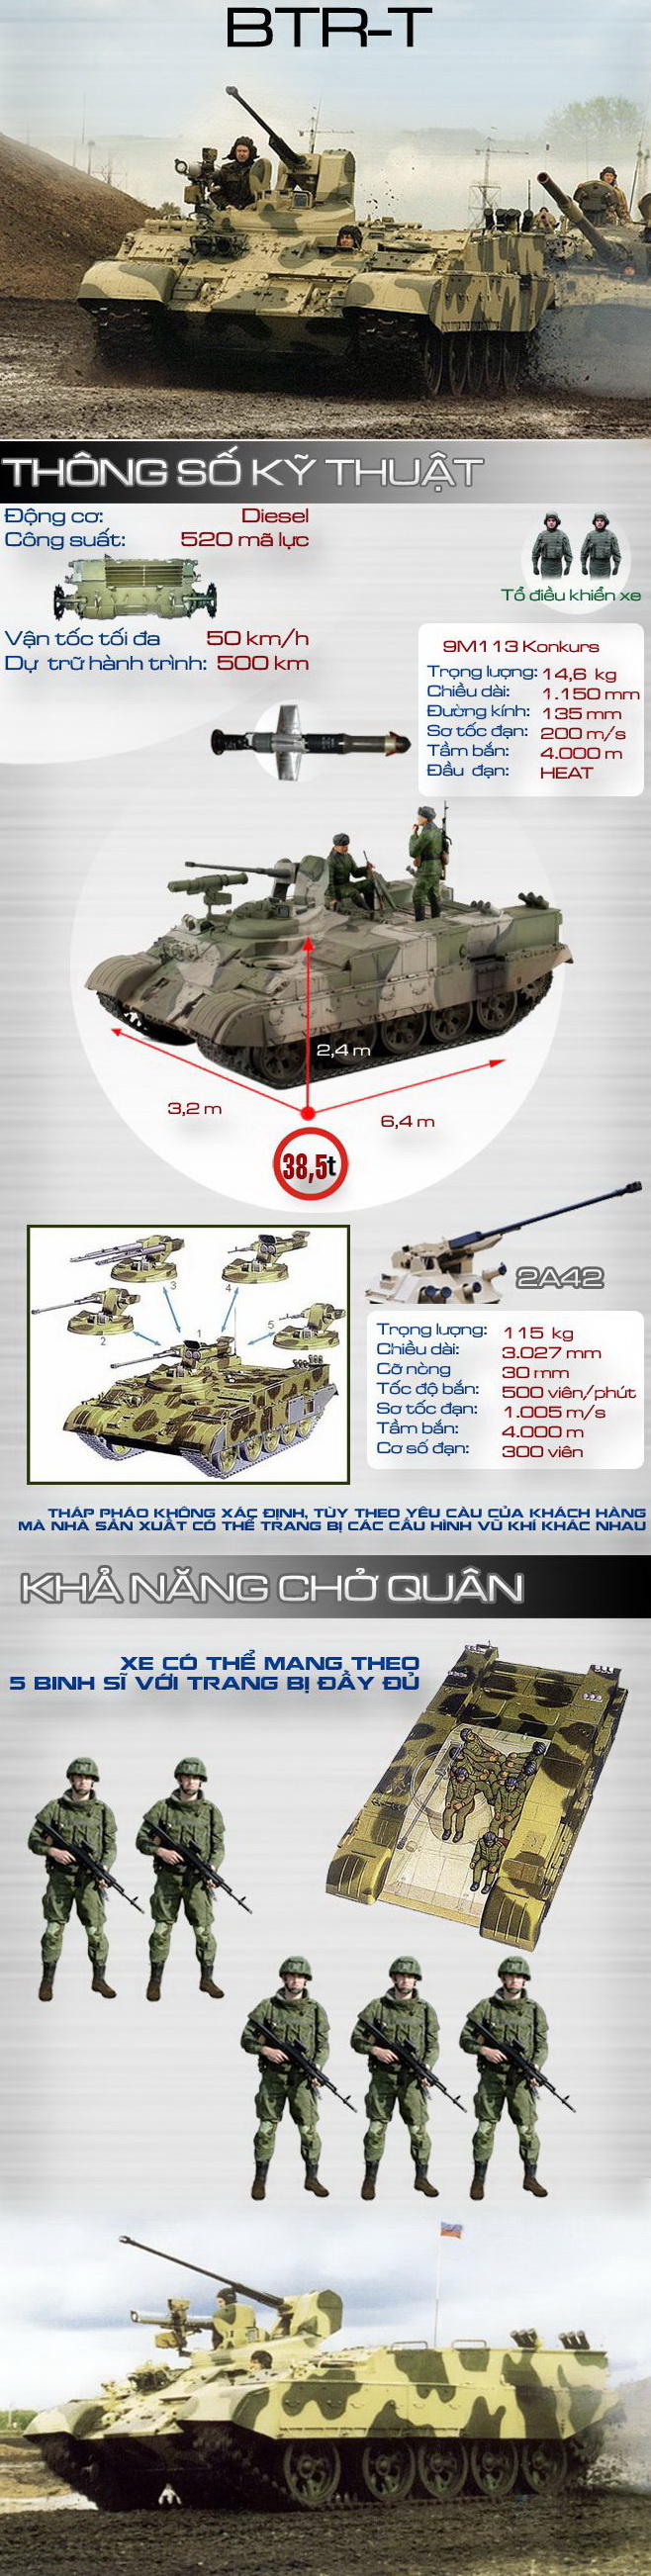 Đây là phương án hoán cải T-54/55 thành APC tối ưu đối với VN? - Ảnh 1.